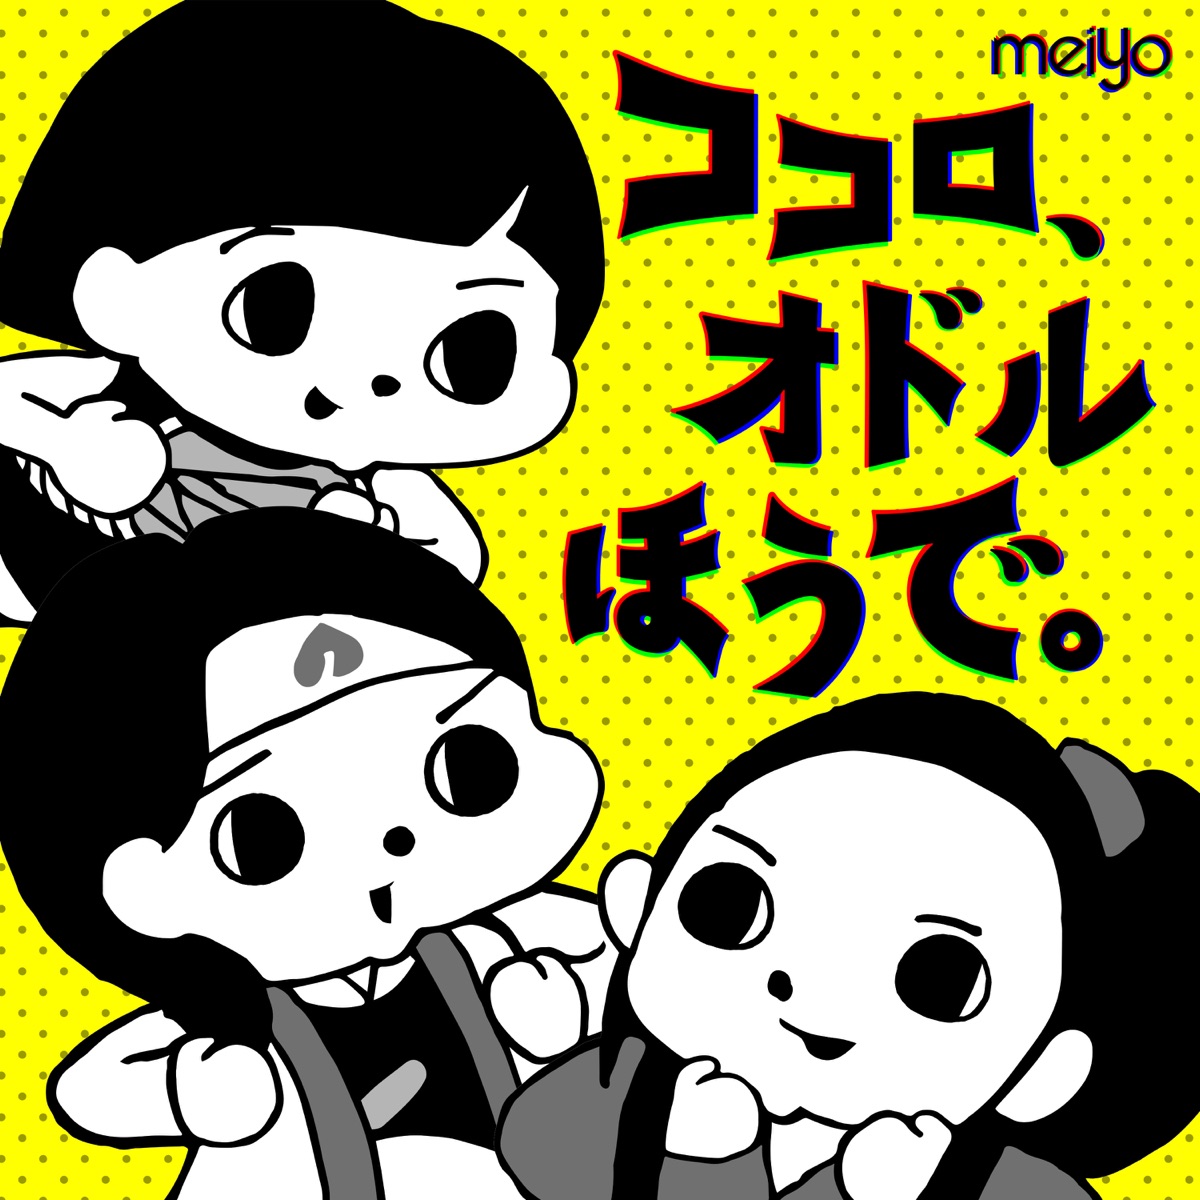 Cover art for『meiyo - Kokoro, Odoru Hou de.』from the release『Kokoro, Odoru Hou de.』